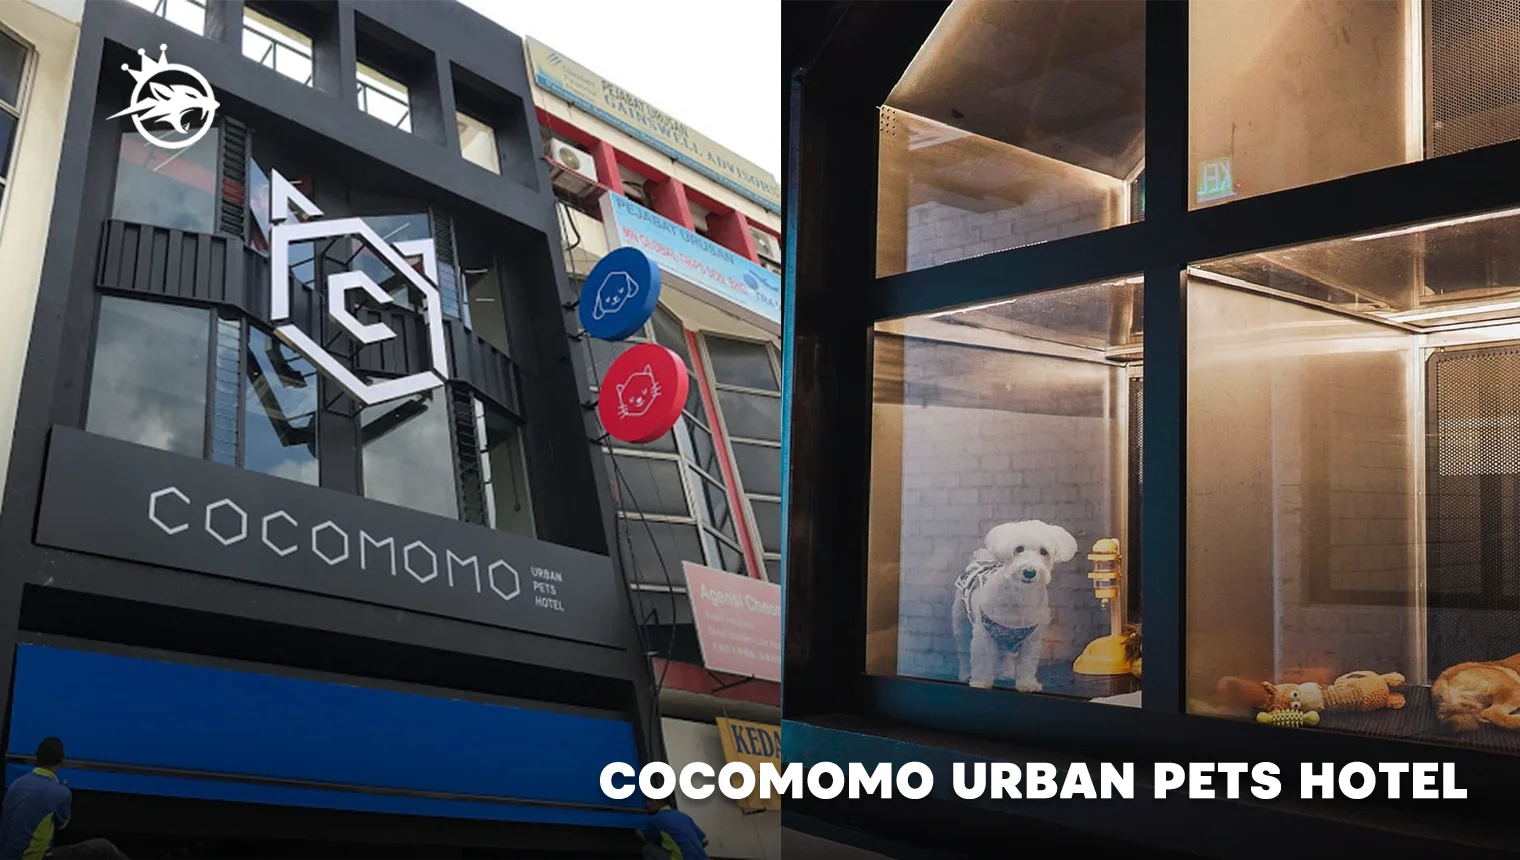 Cocomomo Urban Pets Hotel